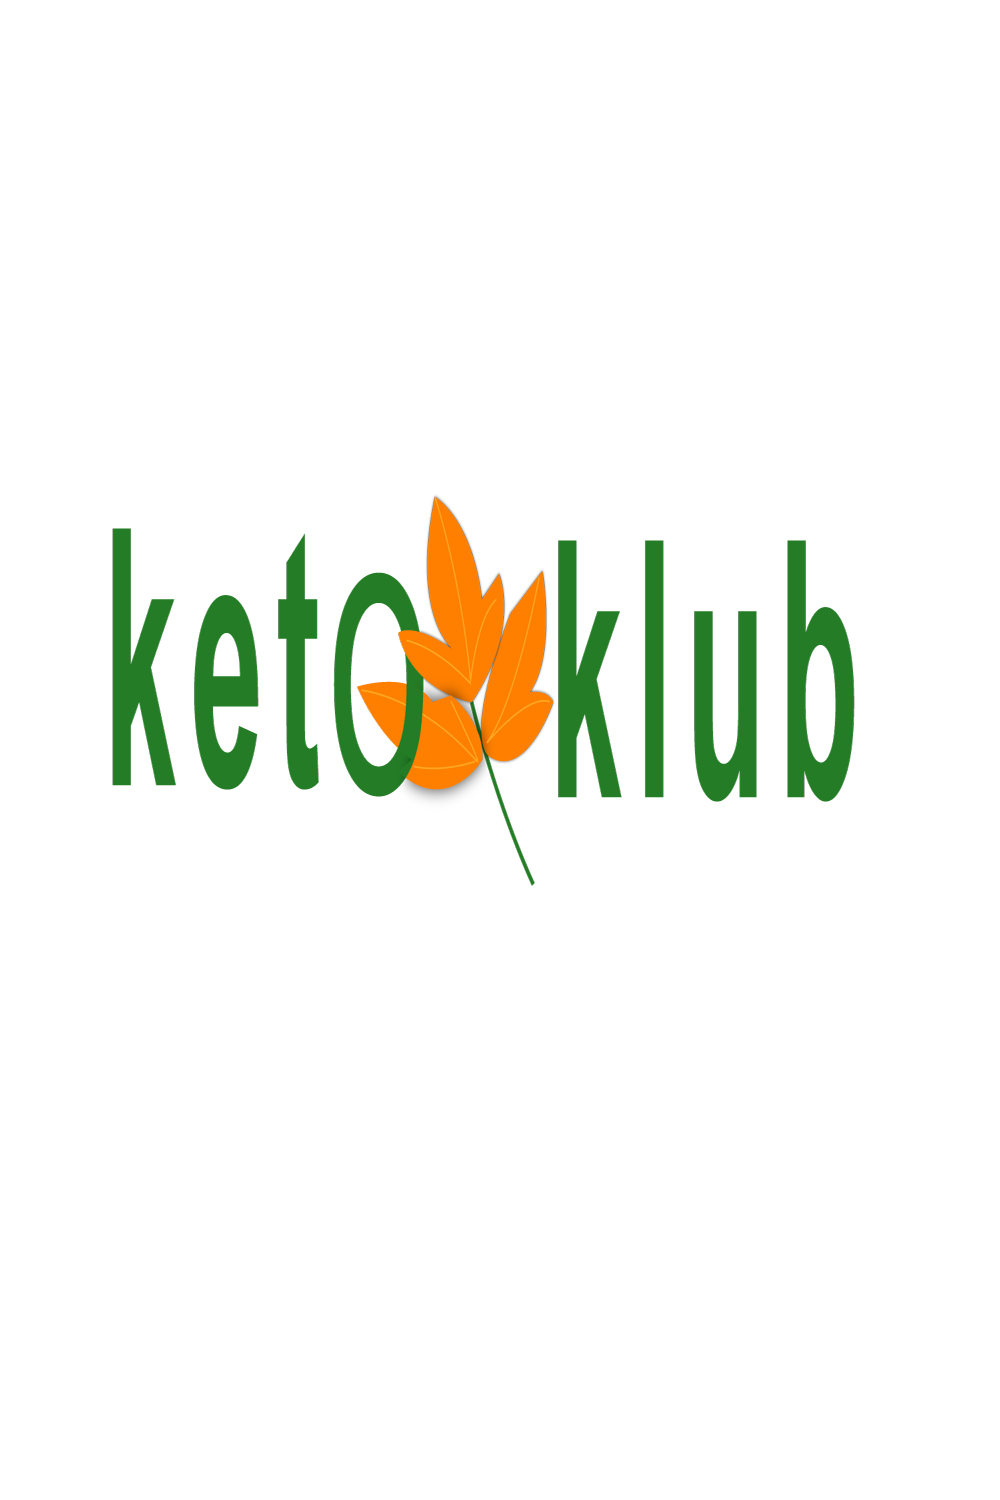 Keto Klub - TShirt Print Design pinterest preview image.